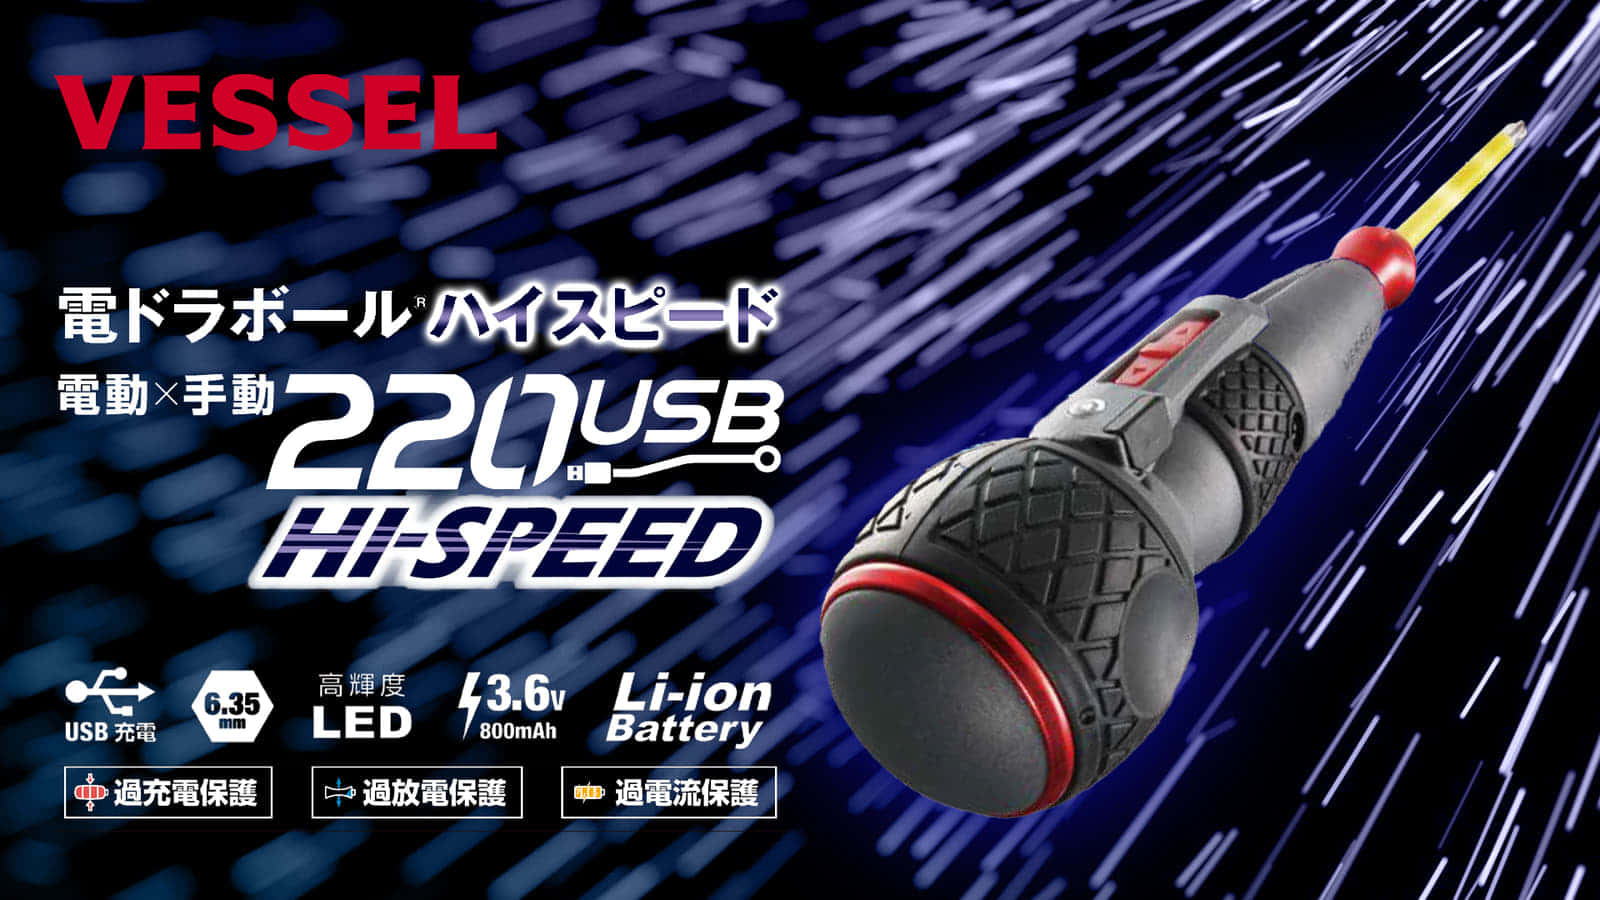 VESSEL 電ドラボールハイスピードを発売、4倍速の高速回転モデル